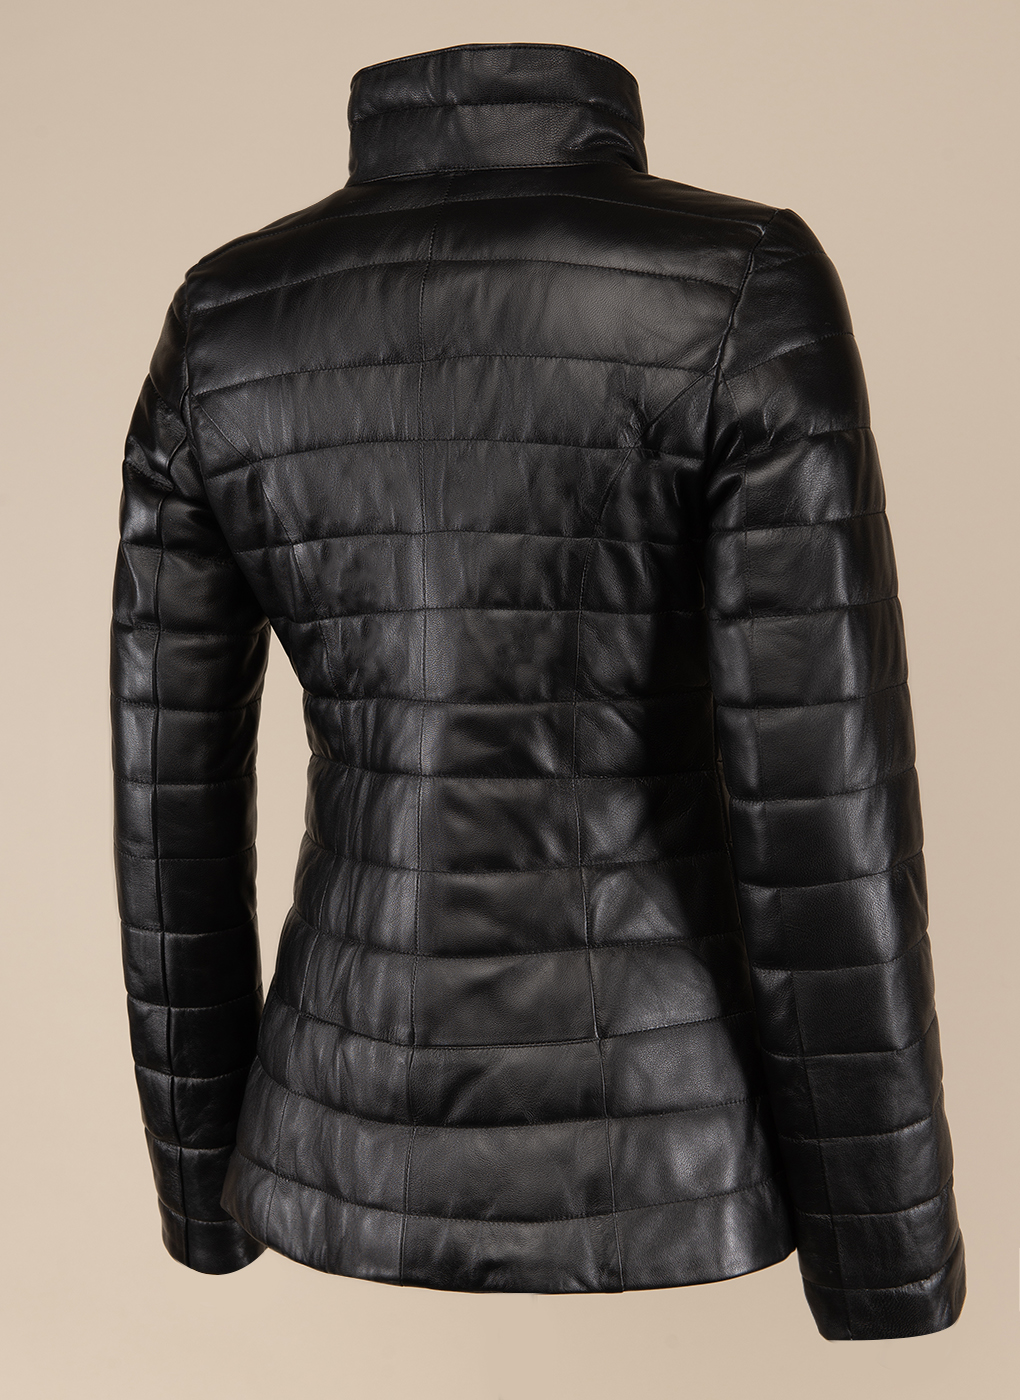 Кожаная куртка женская Каляев 49592 черная 52 RU